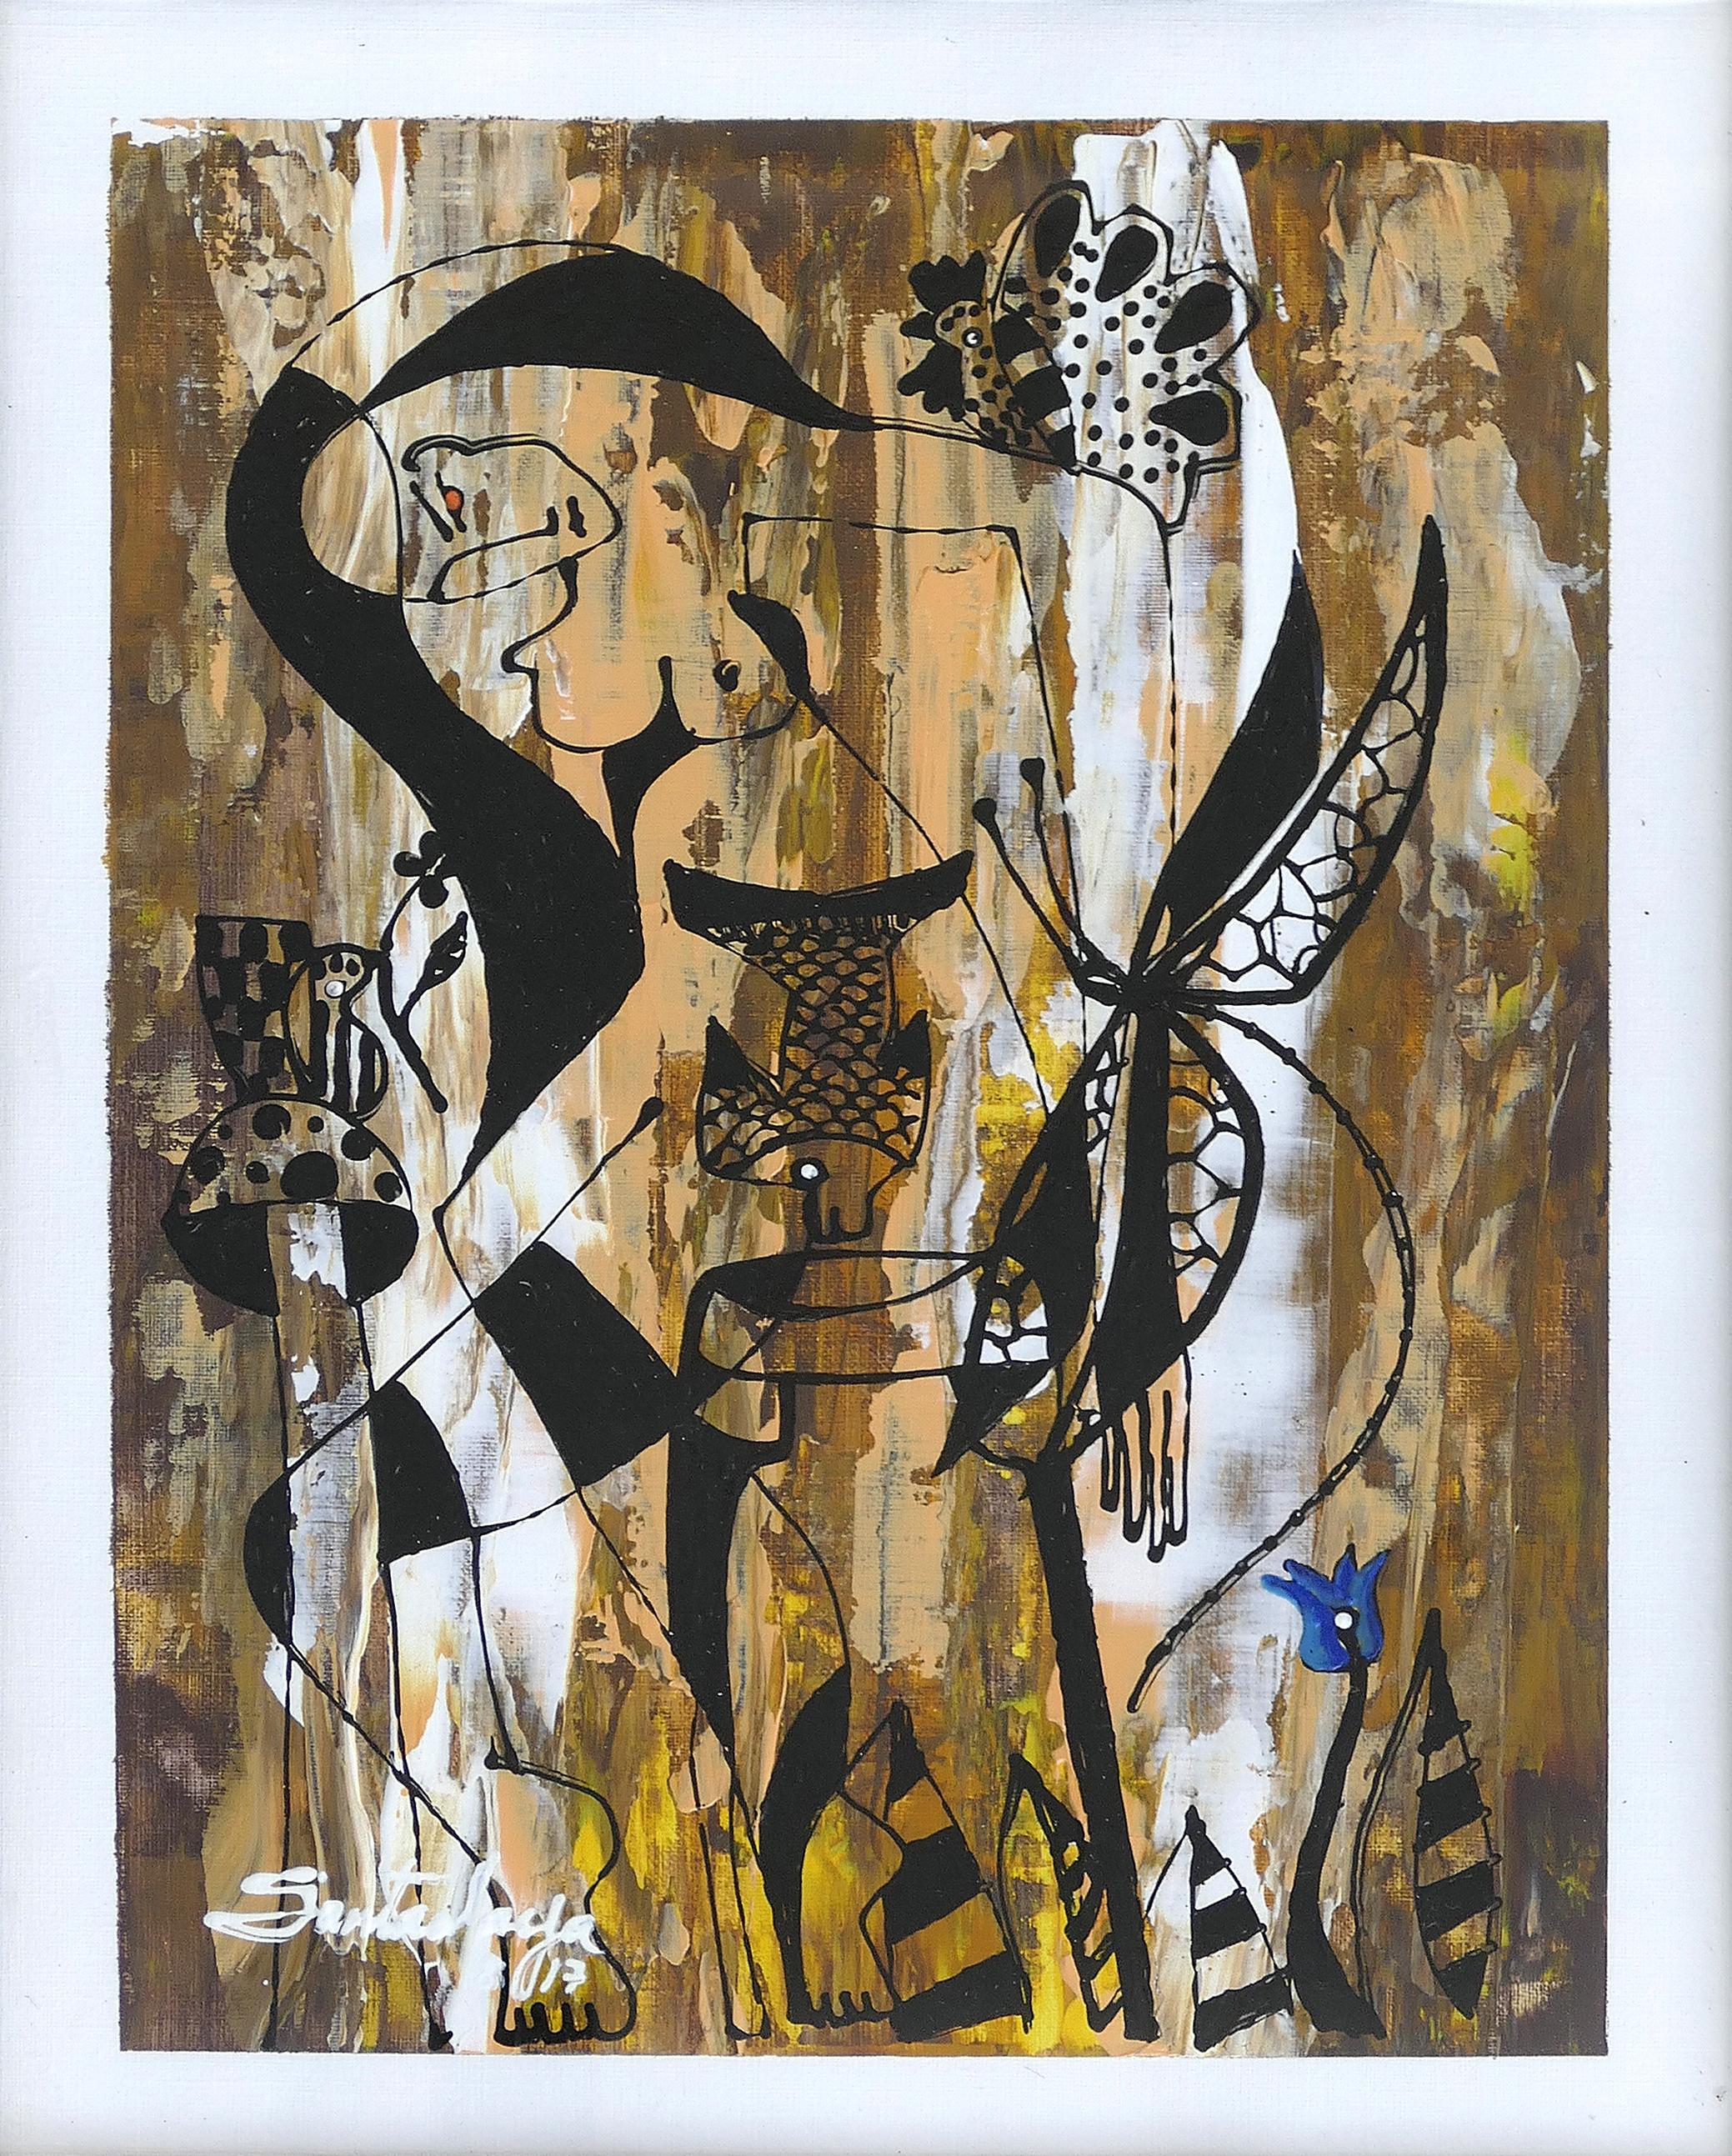 Hiremio Garcia Santaolaya peinture abstraite, artiste cubano-américain

Nous proposons à la vente une peinture acrylique figurative abstraite originale sur papier de l'artiste cubano-américain Hiremio Garcia Santaolaya. L'artiste est né à La Havane,